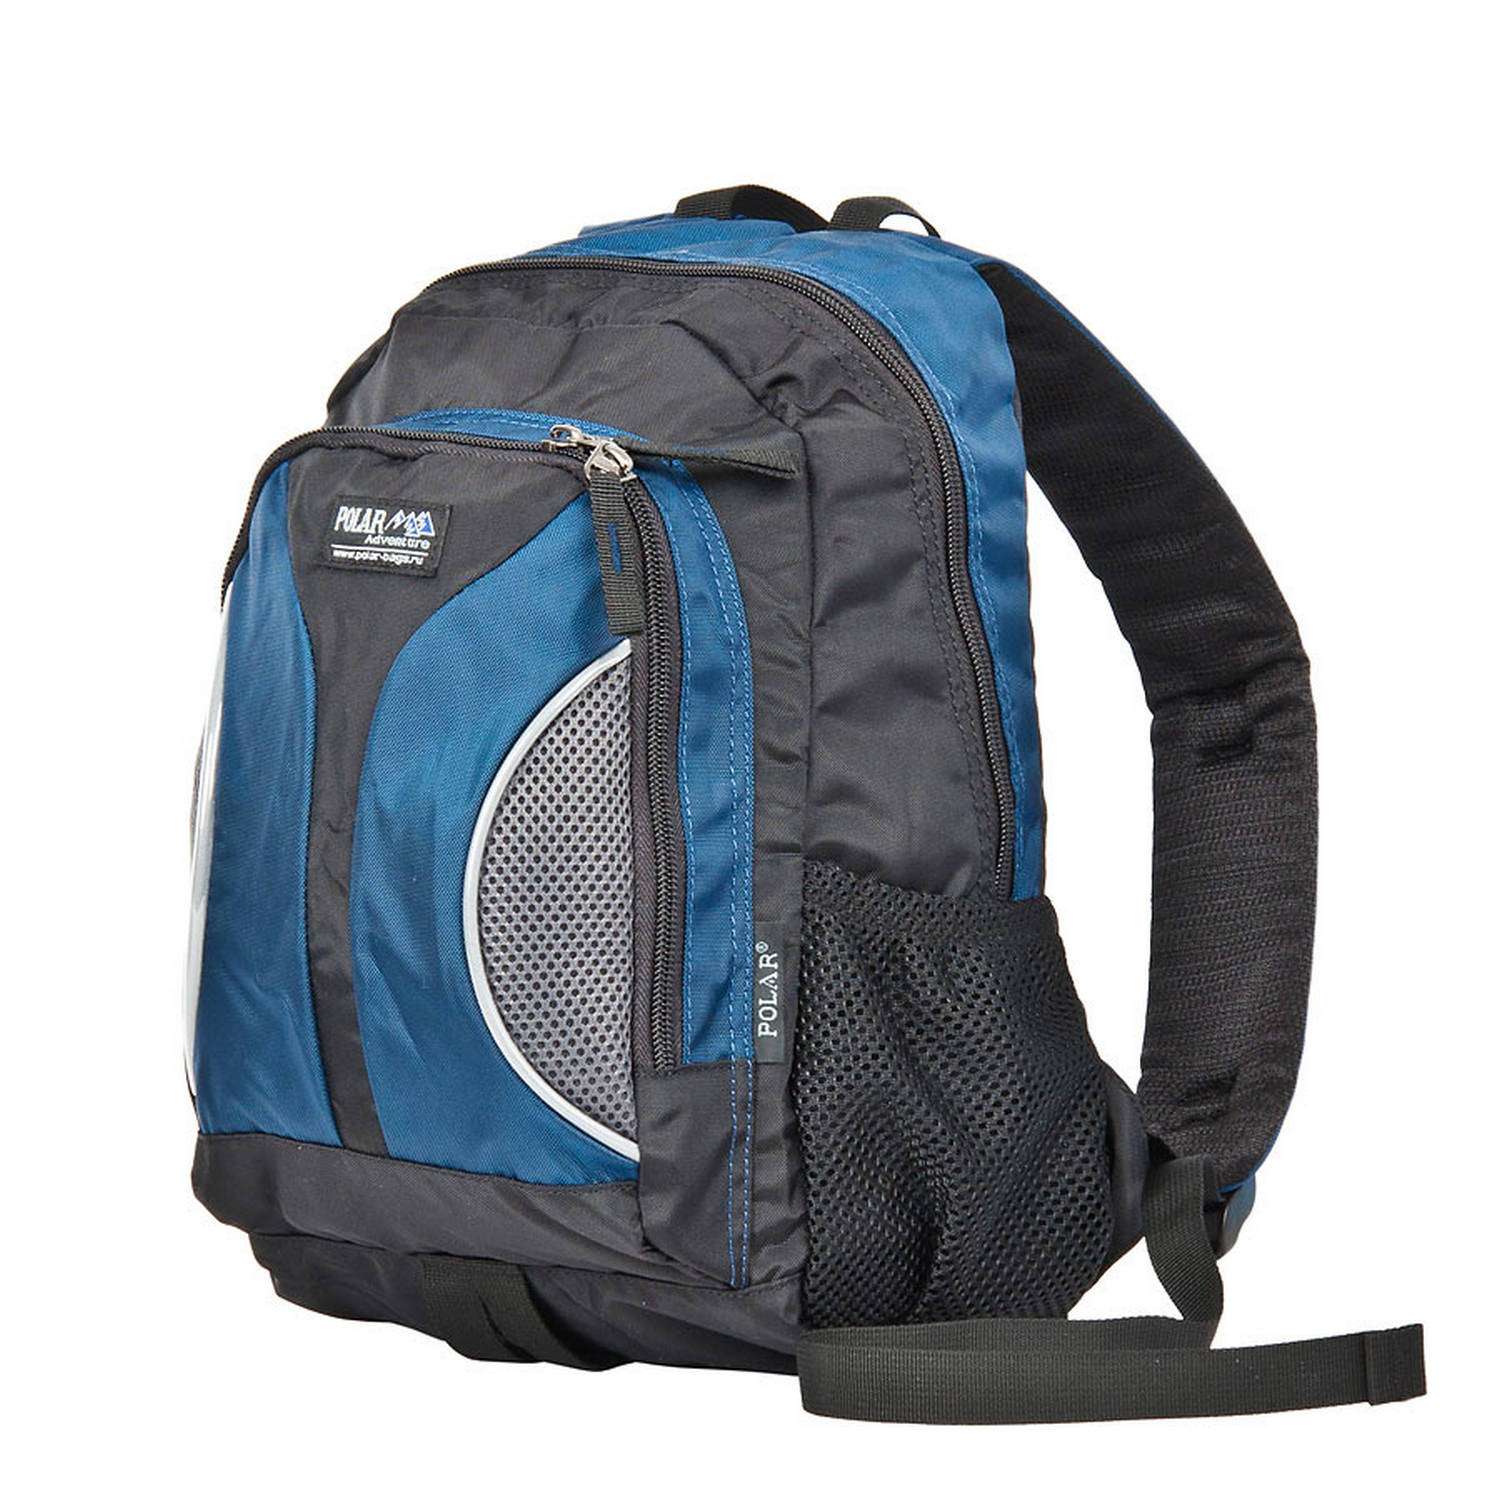 Рюкзак школьный POLAR Городской синий - фото 1